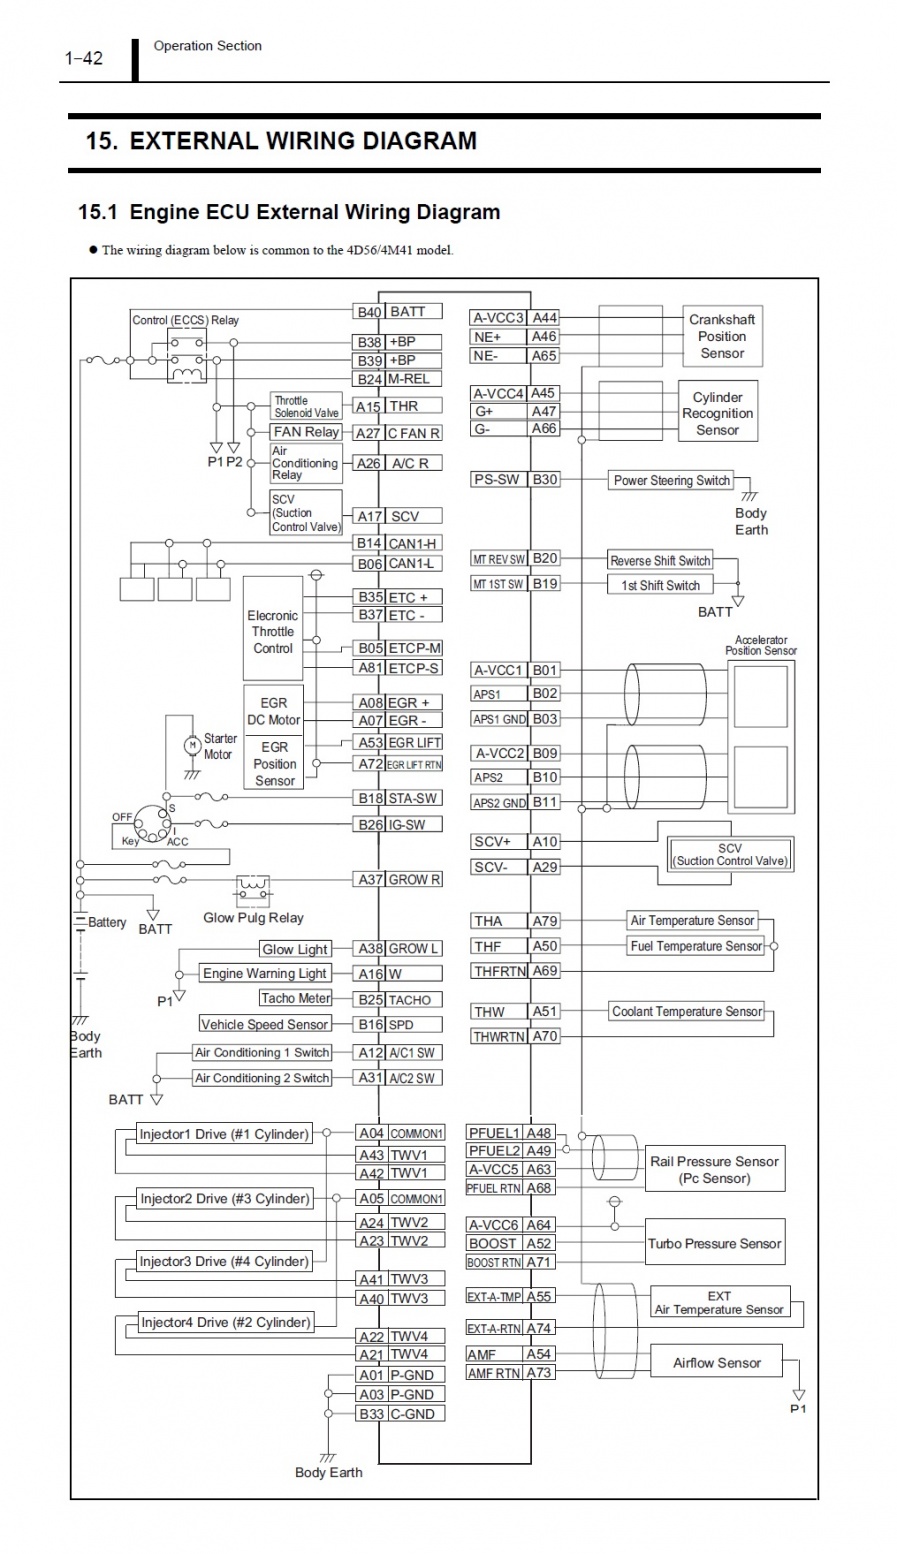 ชื่อ:  Engine ECU External Wiring Diagram.jpg
ครั้ง: 3375
ขนาด:  356.8 กิโลไบต์